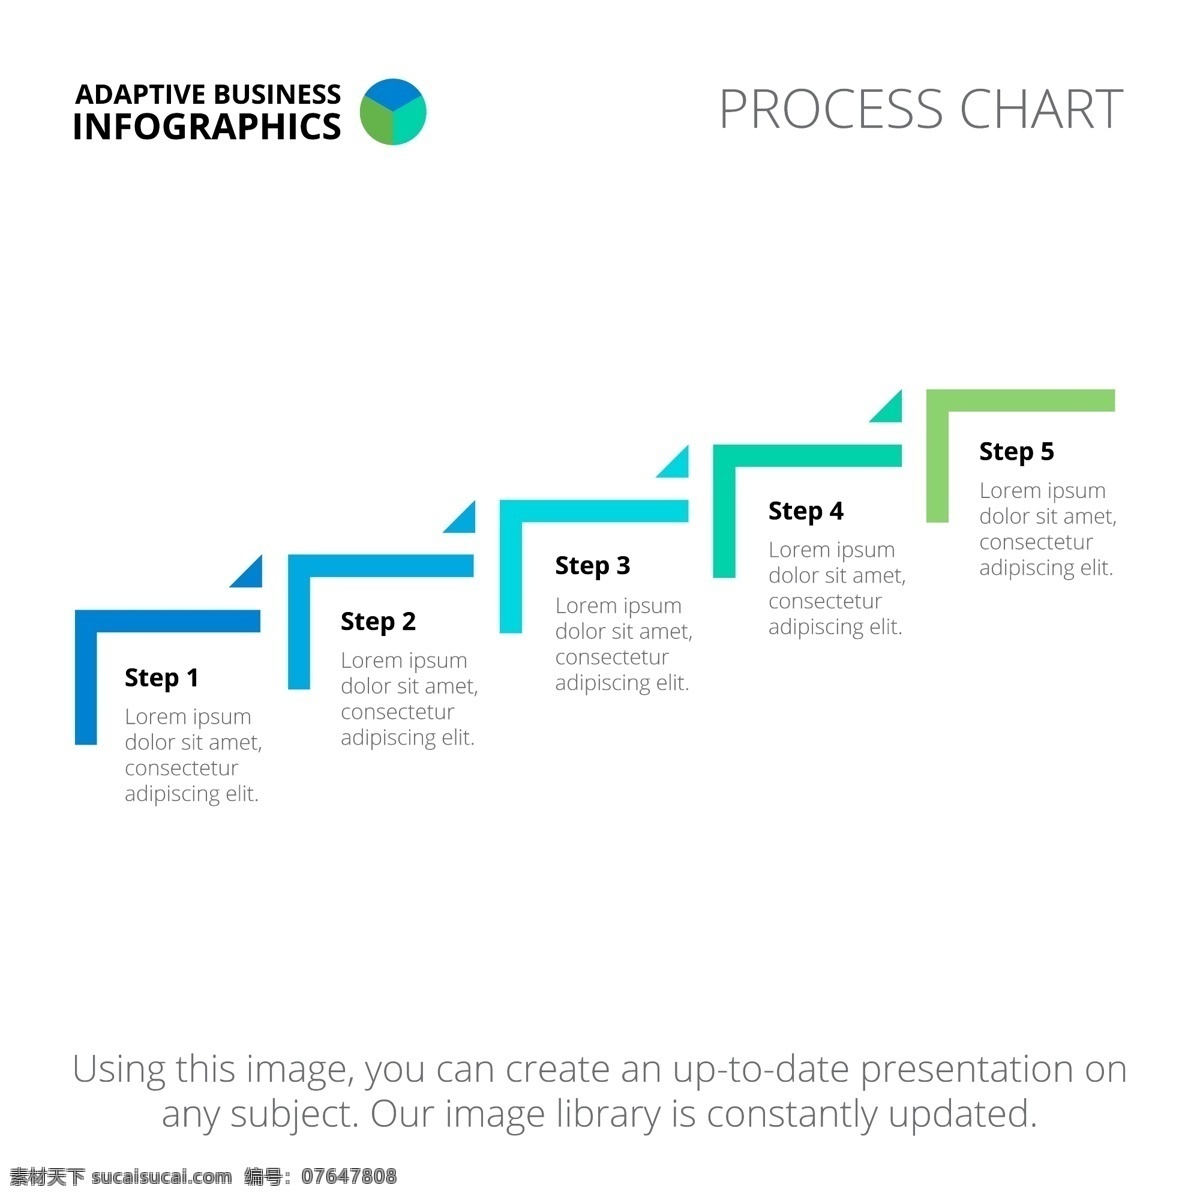 图表模板设计 图表 业务 模板 图形 数据 信息 要素 信息图表元素 台阶 楼梯 颜色 商业图表 infography 图表模板